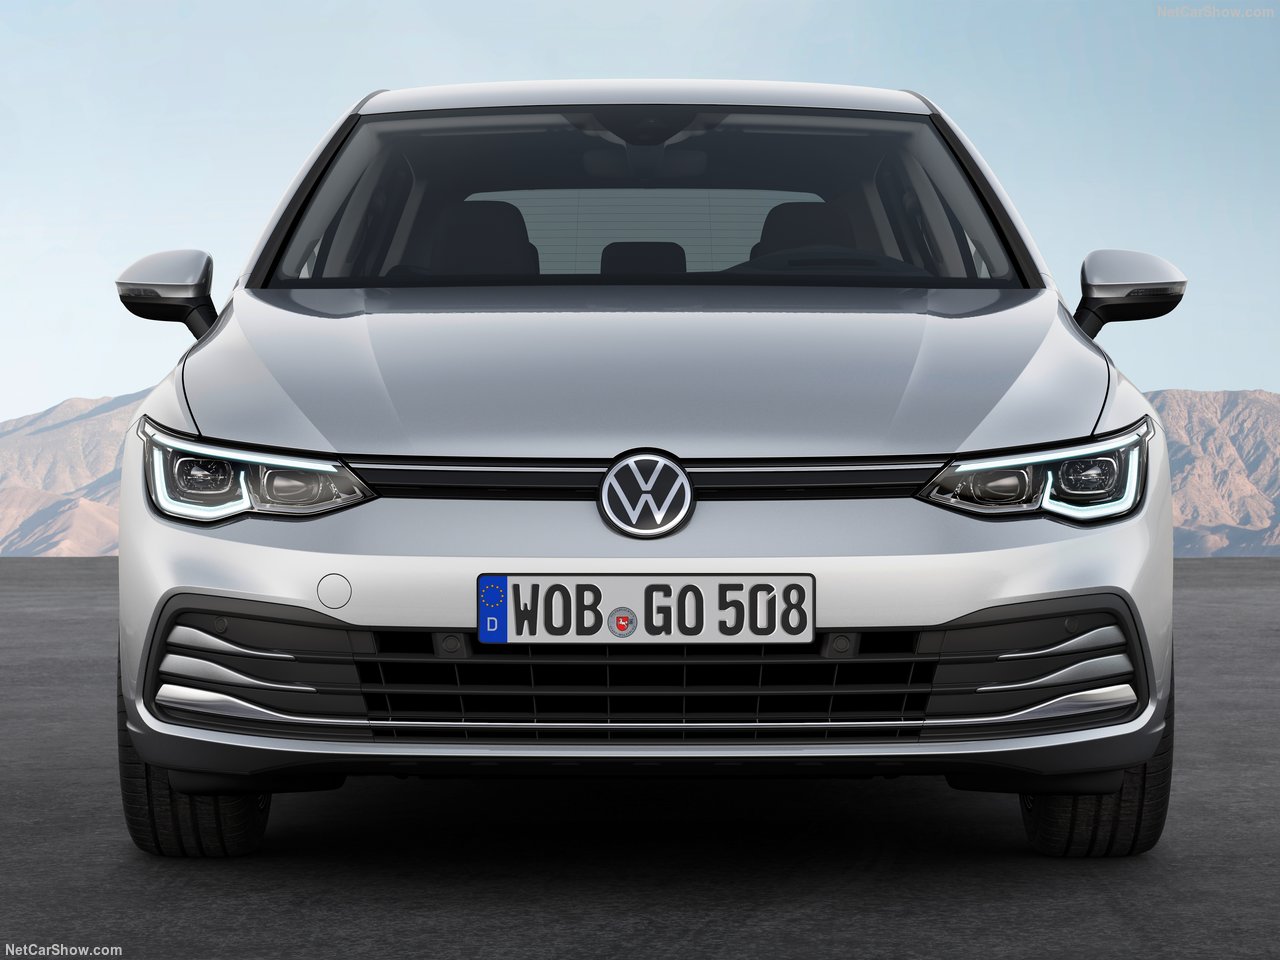 2020 Volkswagen Golf Mk8 tanıtıldı! İşte Volkswagen Golf hakkında tüm ayrıntılar...